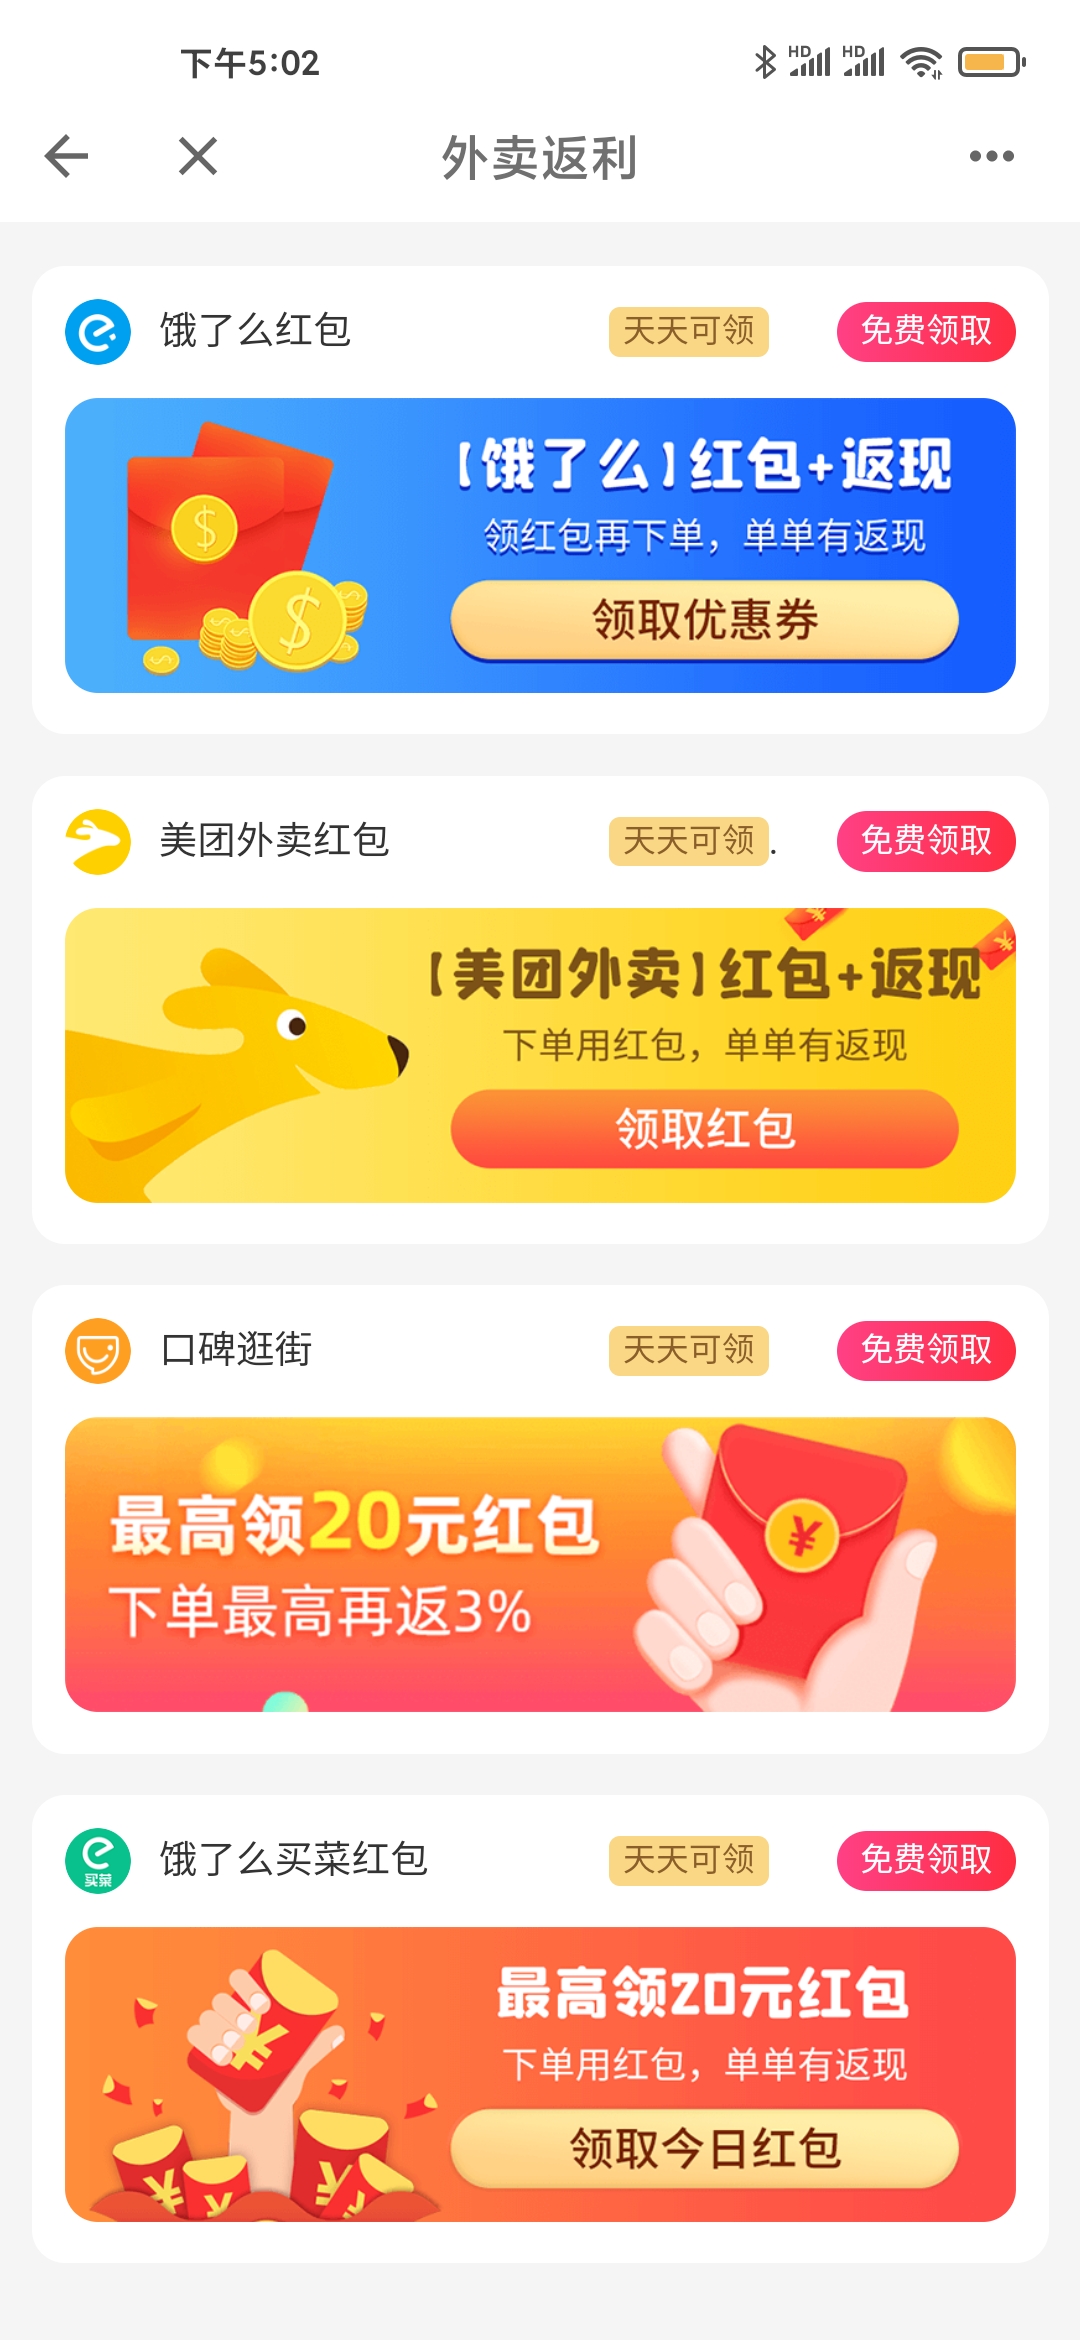 美团app免费红包领取方法教程_52z.com